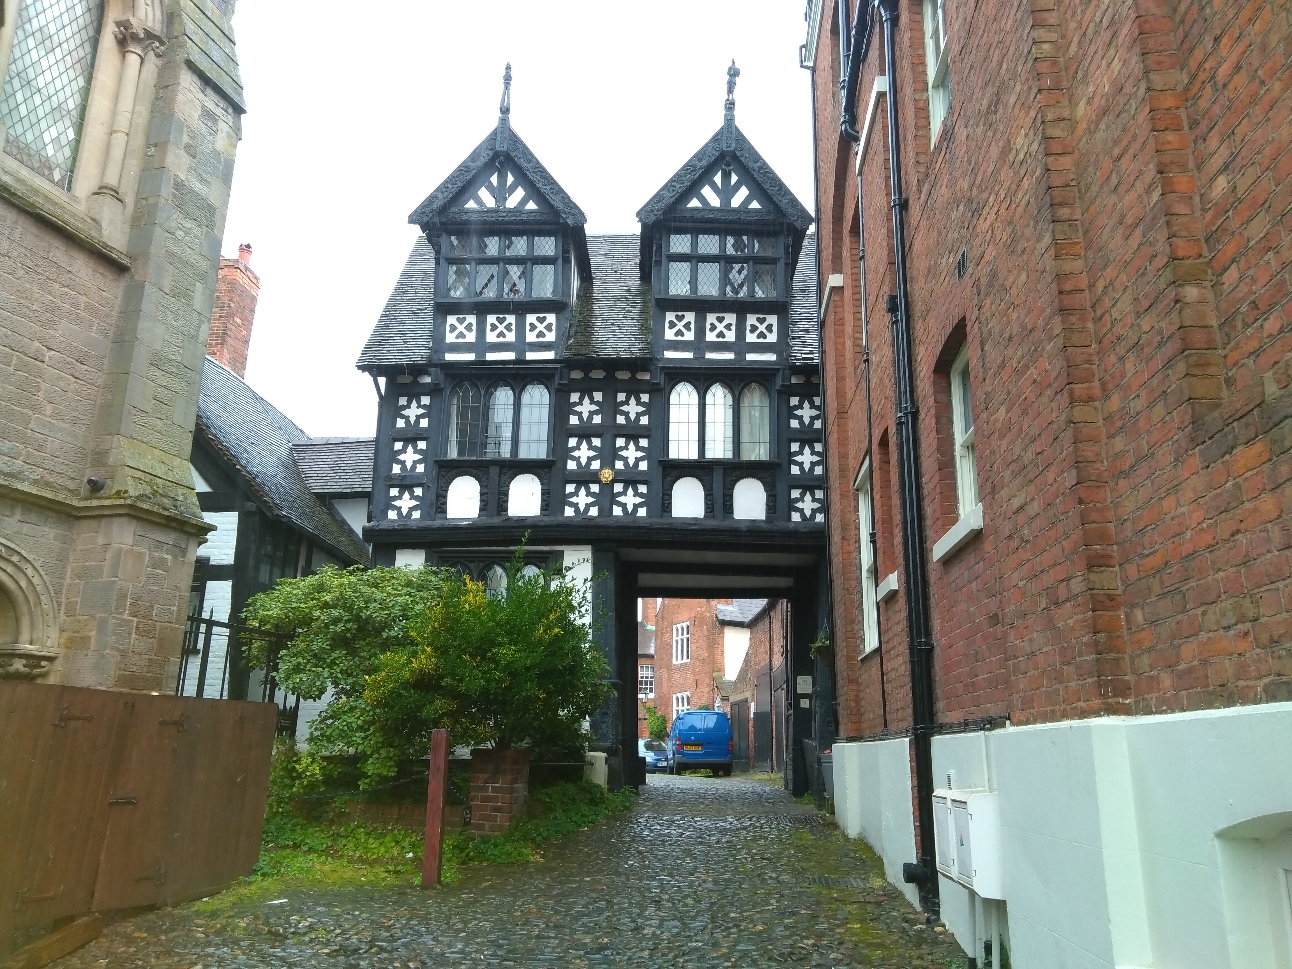 Shrewsbury - Medieval alleyway